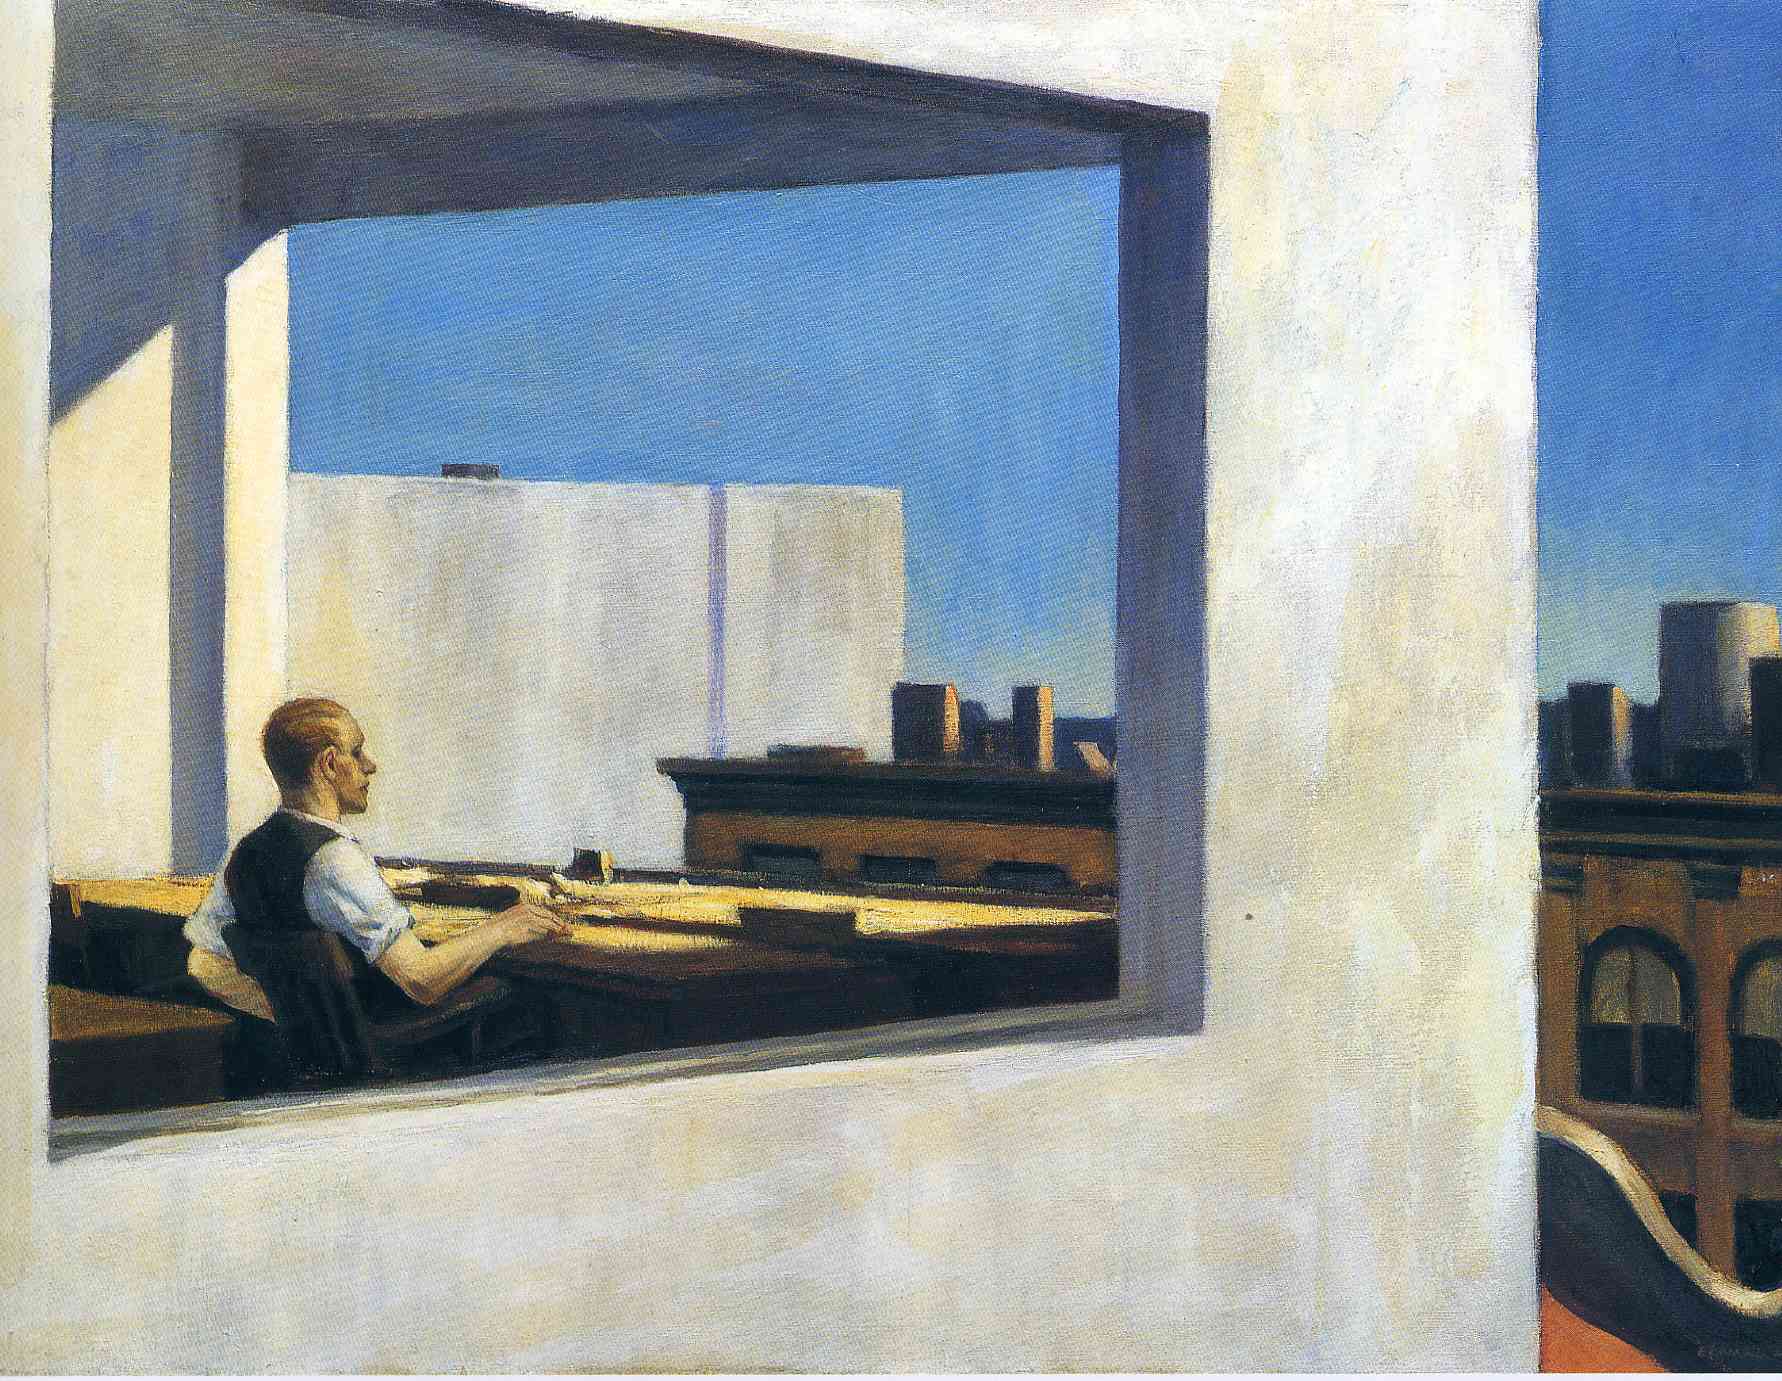 Kancelář v malém městě by Edward Hopper - 1953 - 71,1 cm x 101,6 cm 